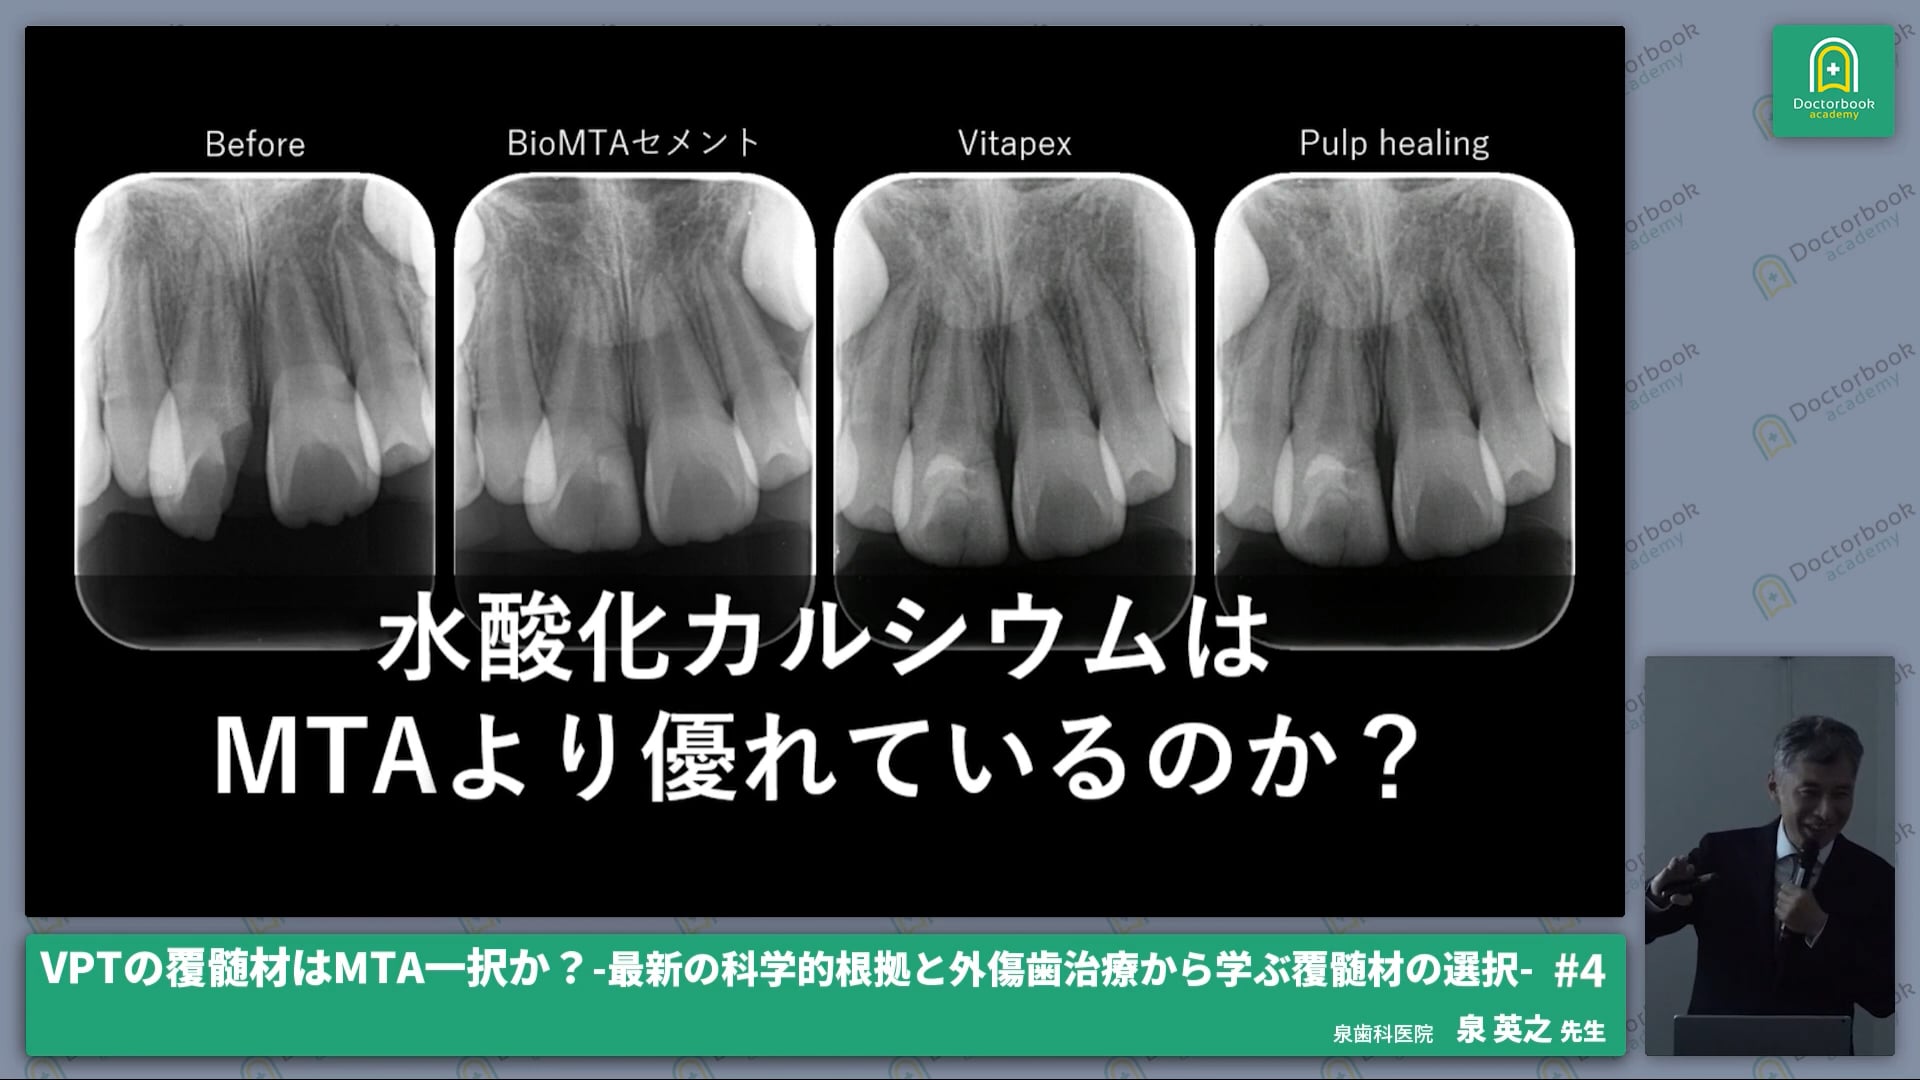 論文から導き出すVPT覆髄材の選択と外傷歯治療